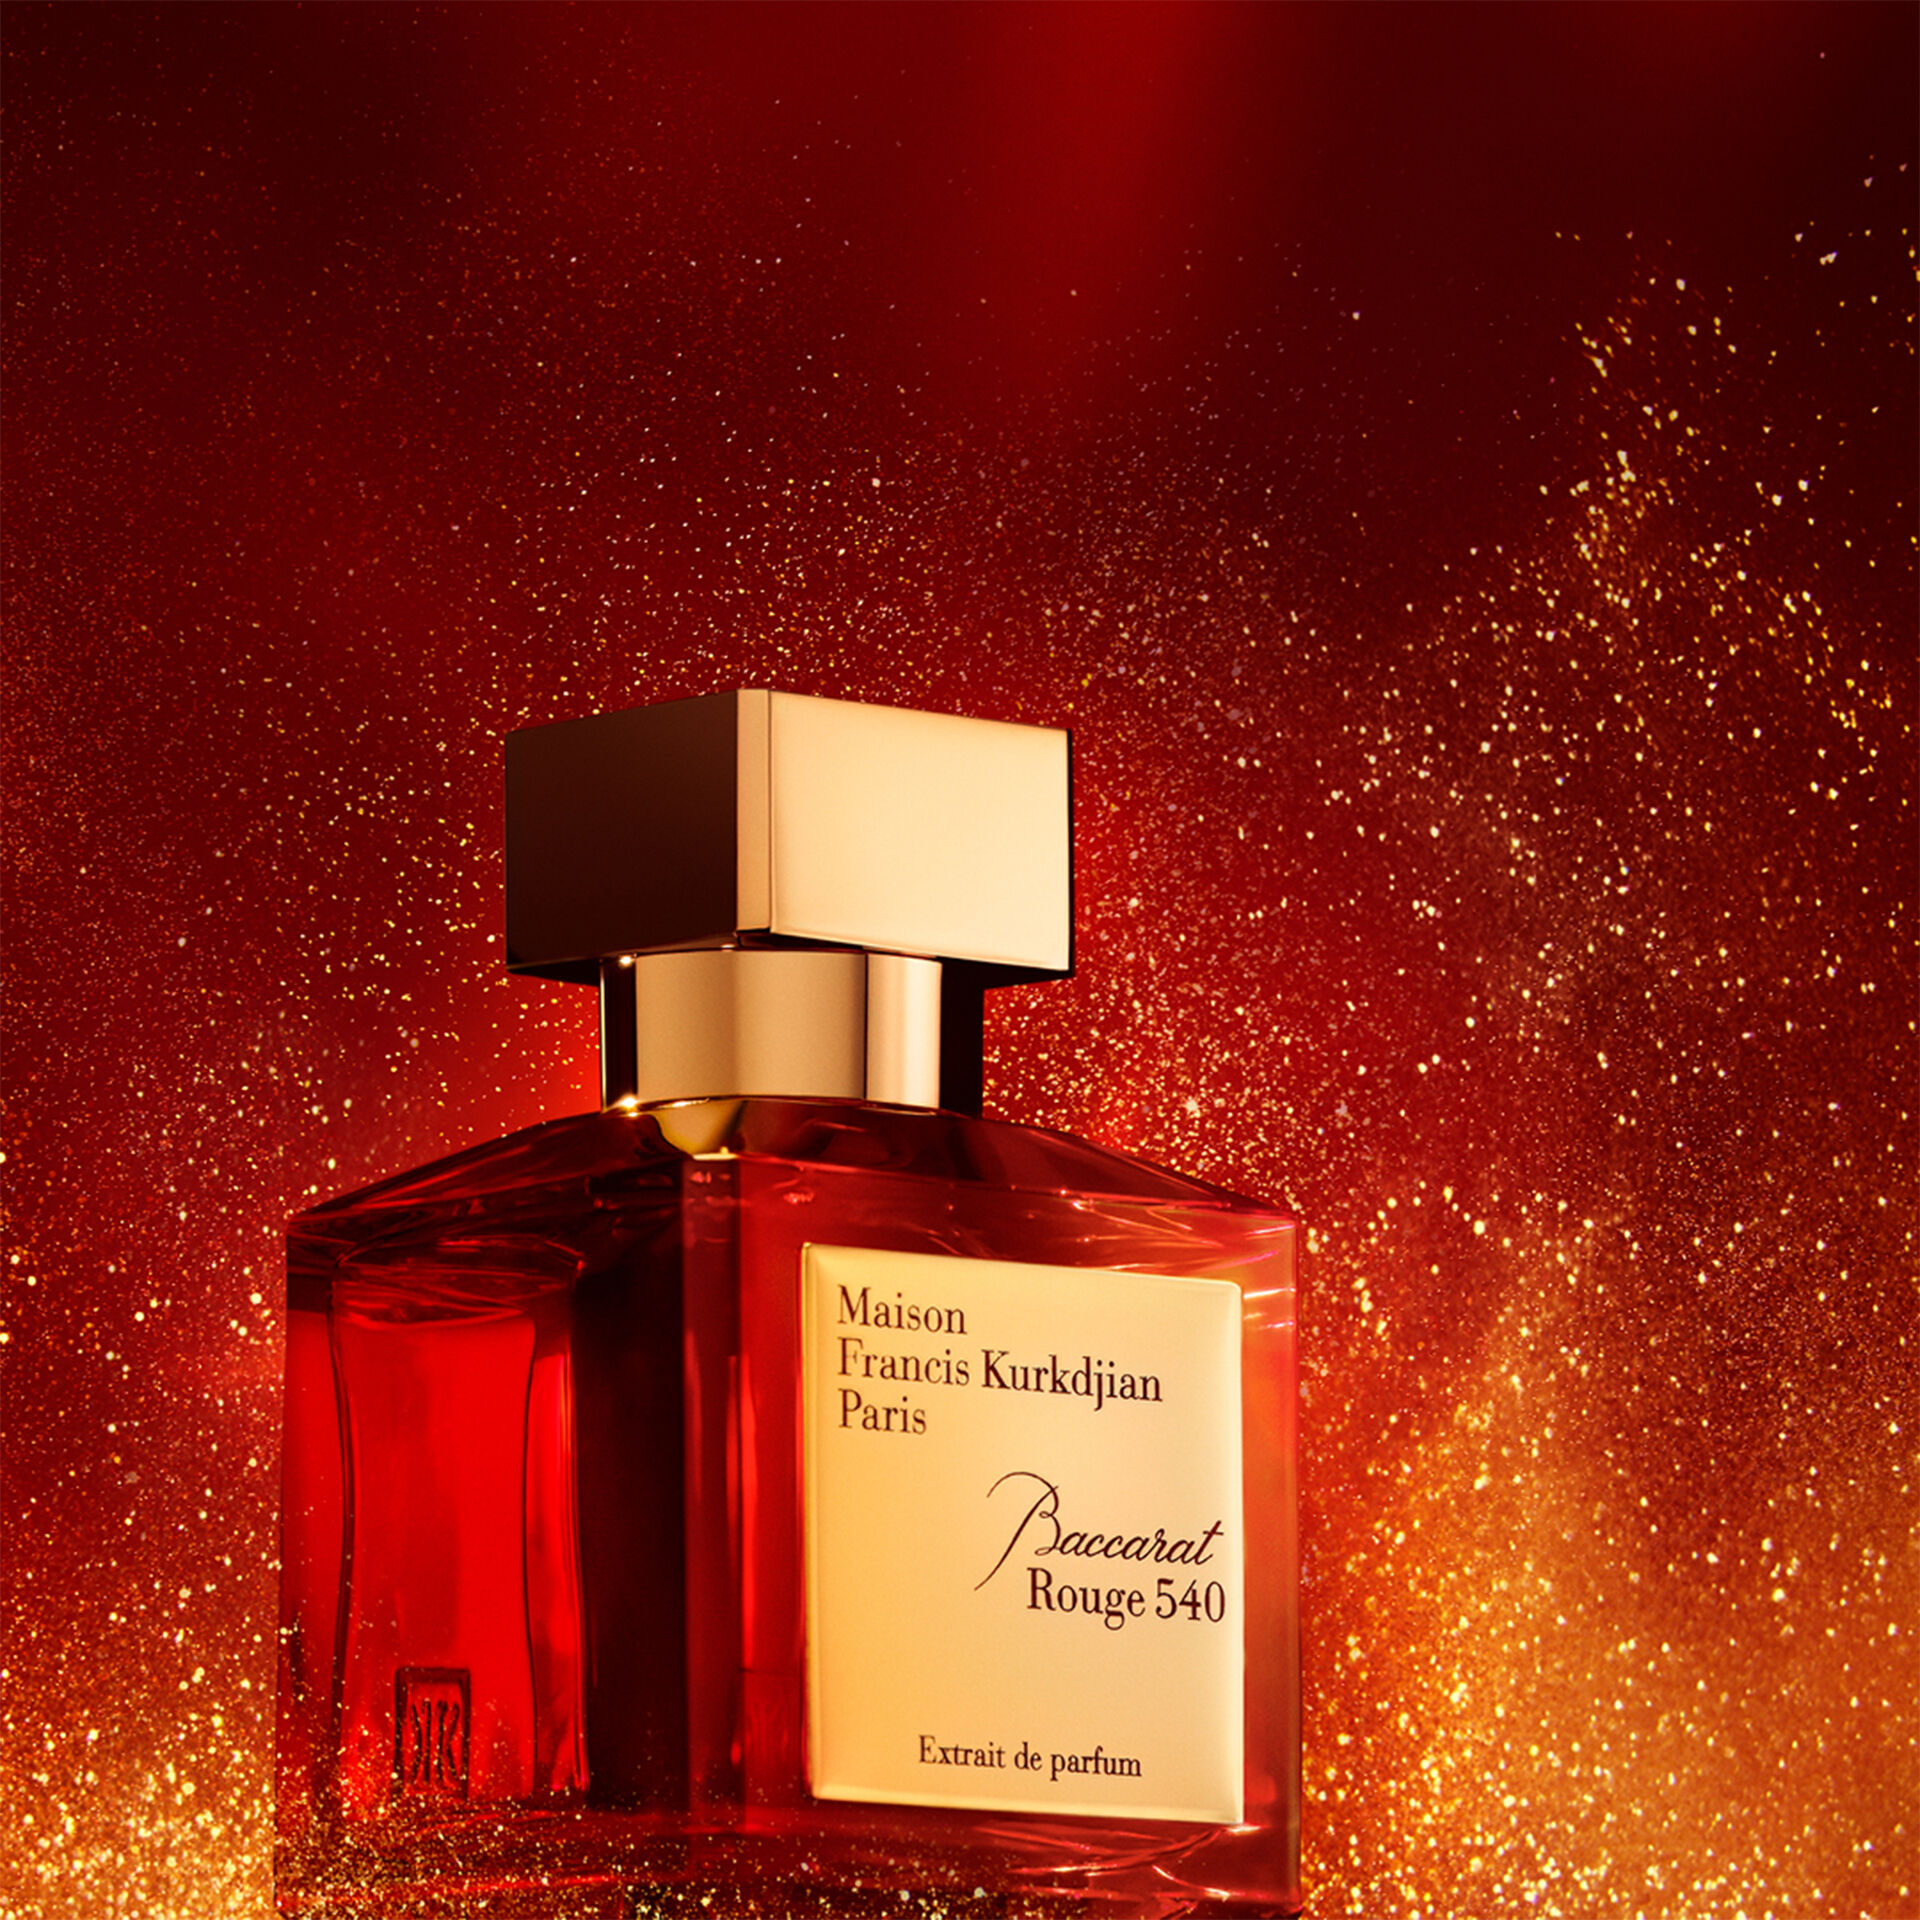 Baccarat Rouge 540 Extrait de Parfum 70 mL | Baccarat